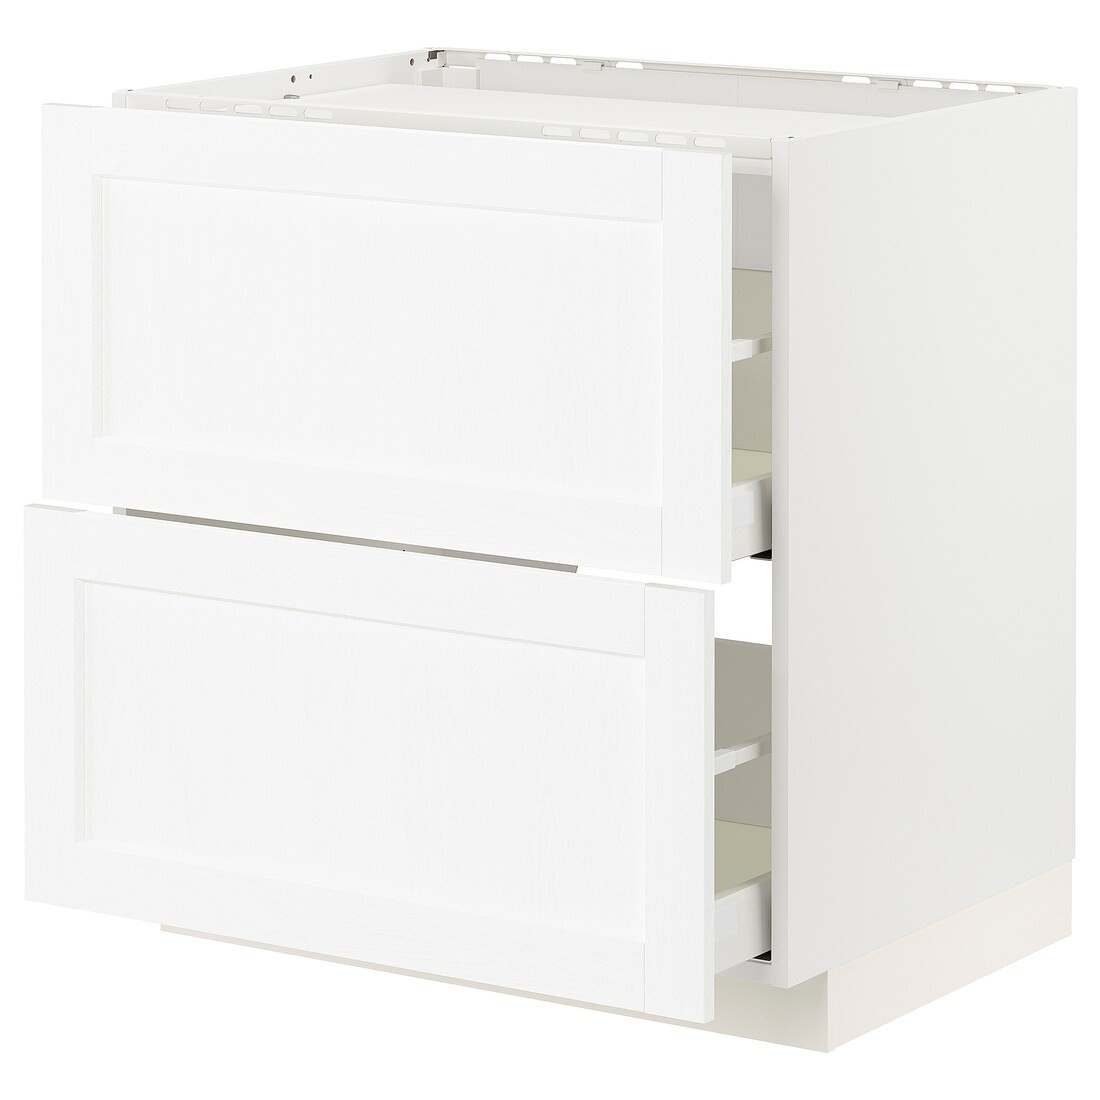 METOD МЕТОД / MAXIMERA МАКСИМЕРА Шкаф для варочной панели / 2 ящика, белый Enköping / белый имитация дерева, 80x60 см